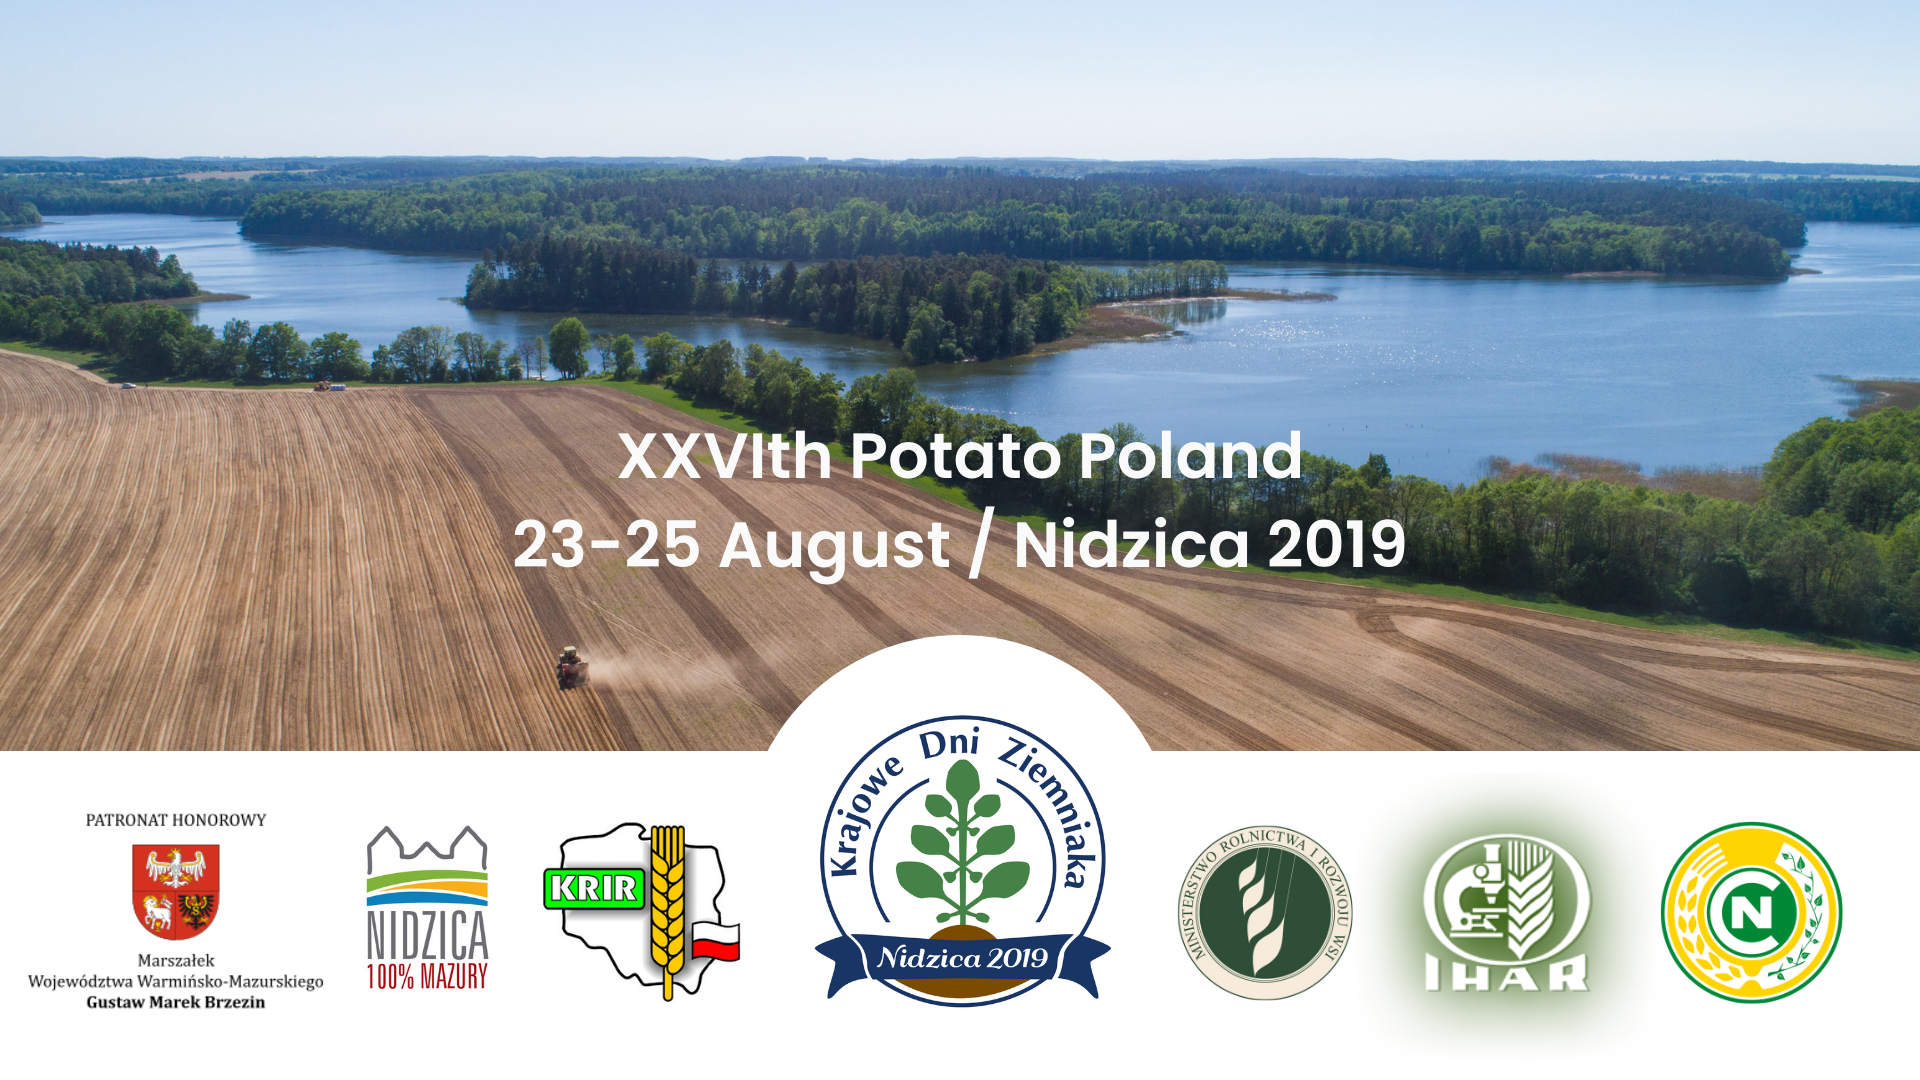 Potato Poland 2019